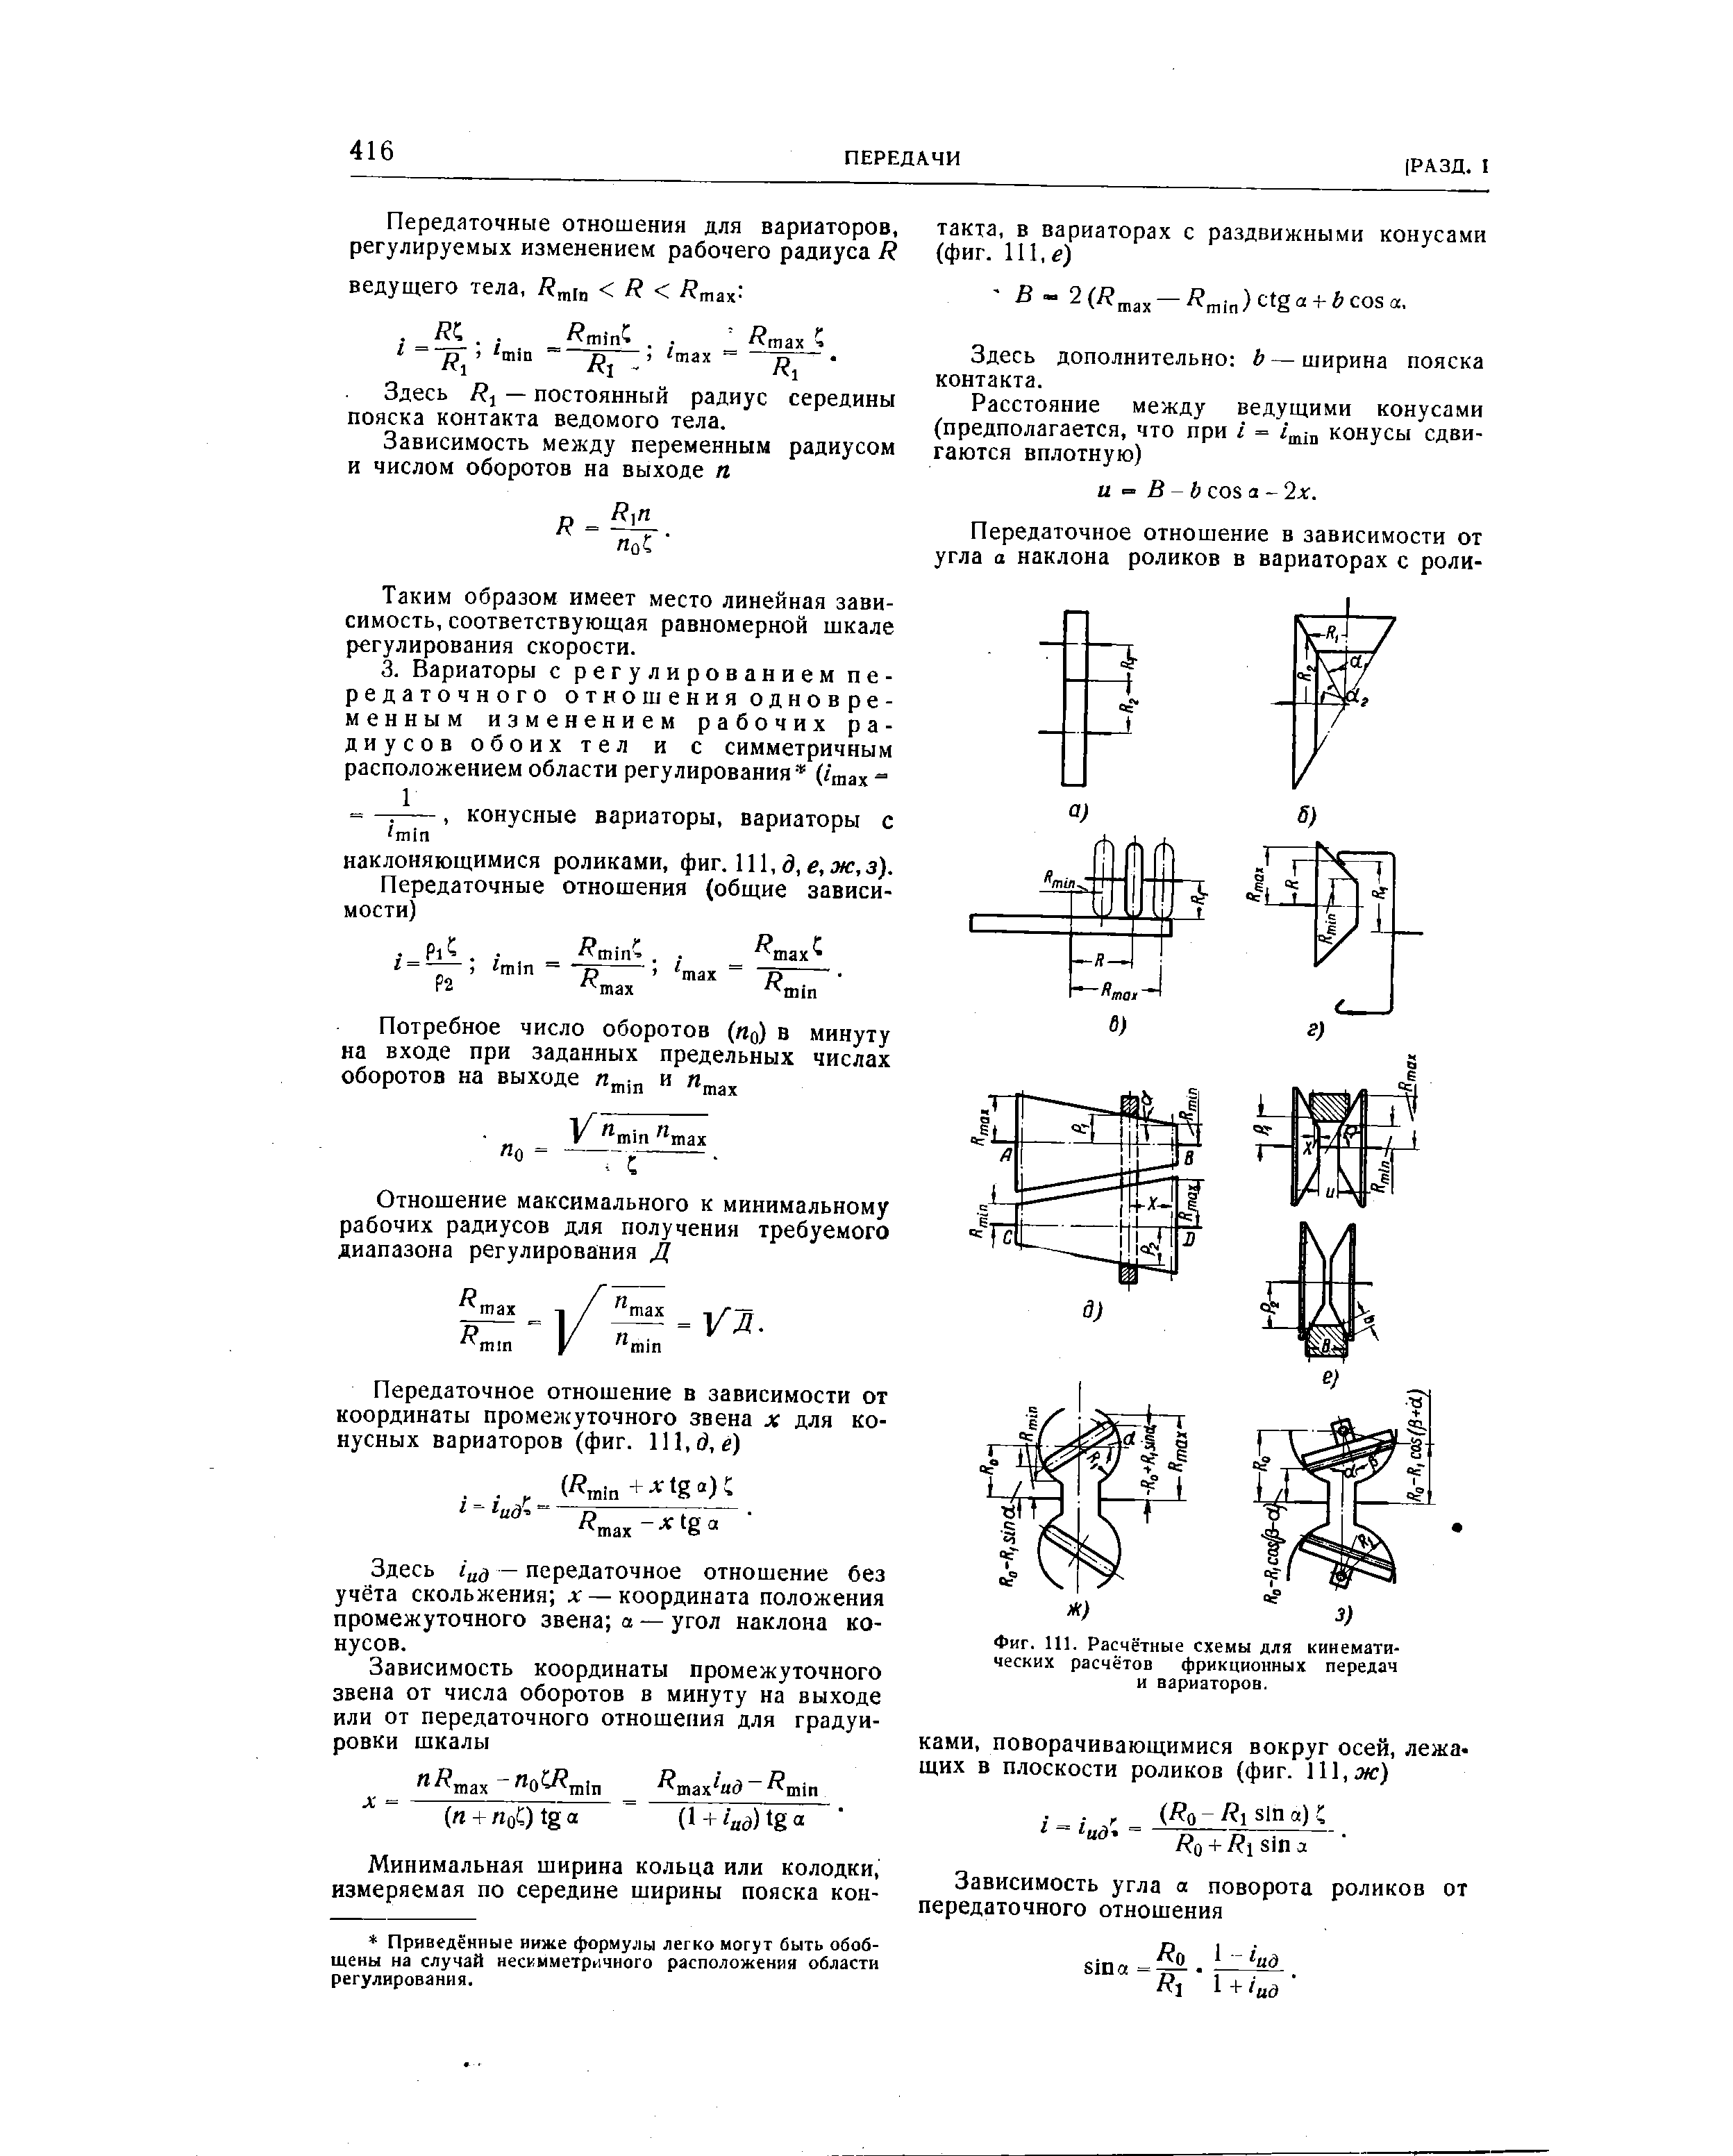 Фиг. 111. Расчётные схемы для кинематических расчётов фрикционных передач и вариаторов.
